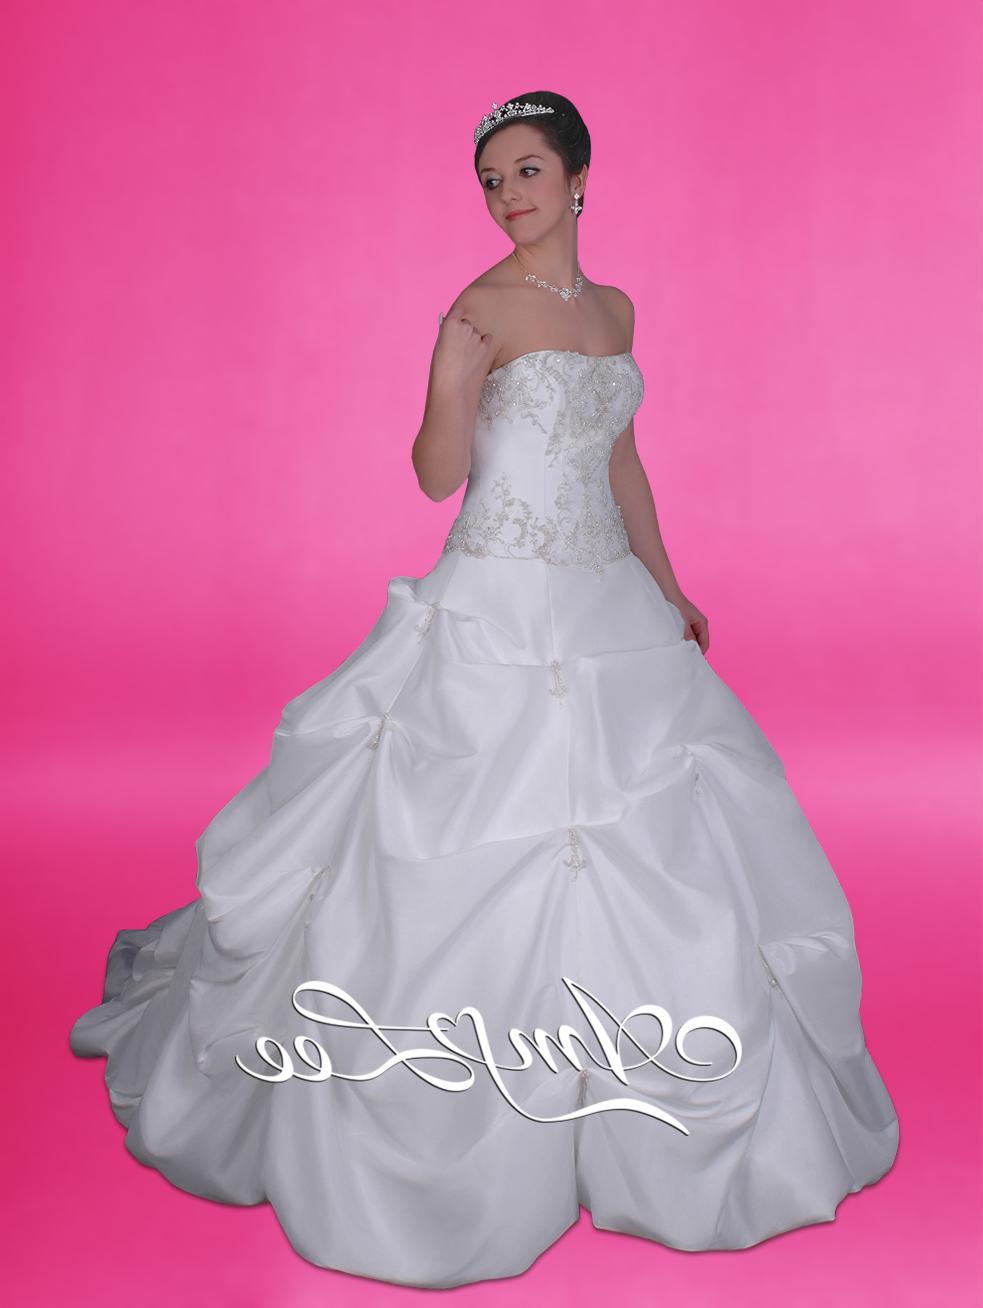 Amy Lee Bridal wedding dress